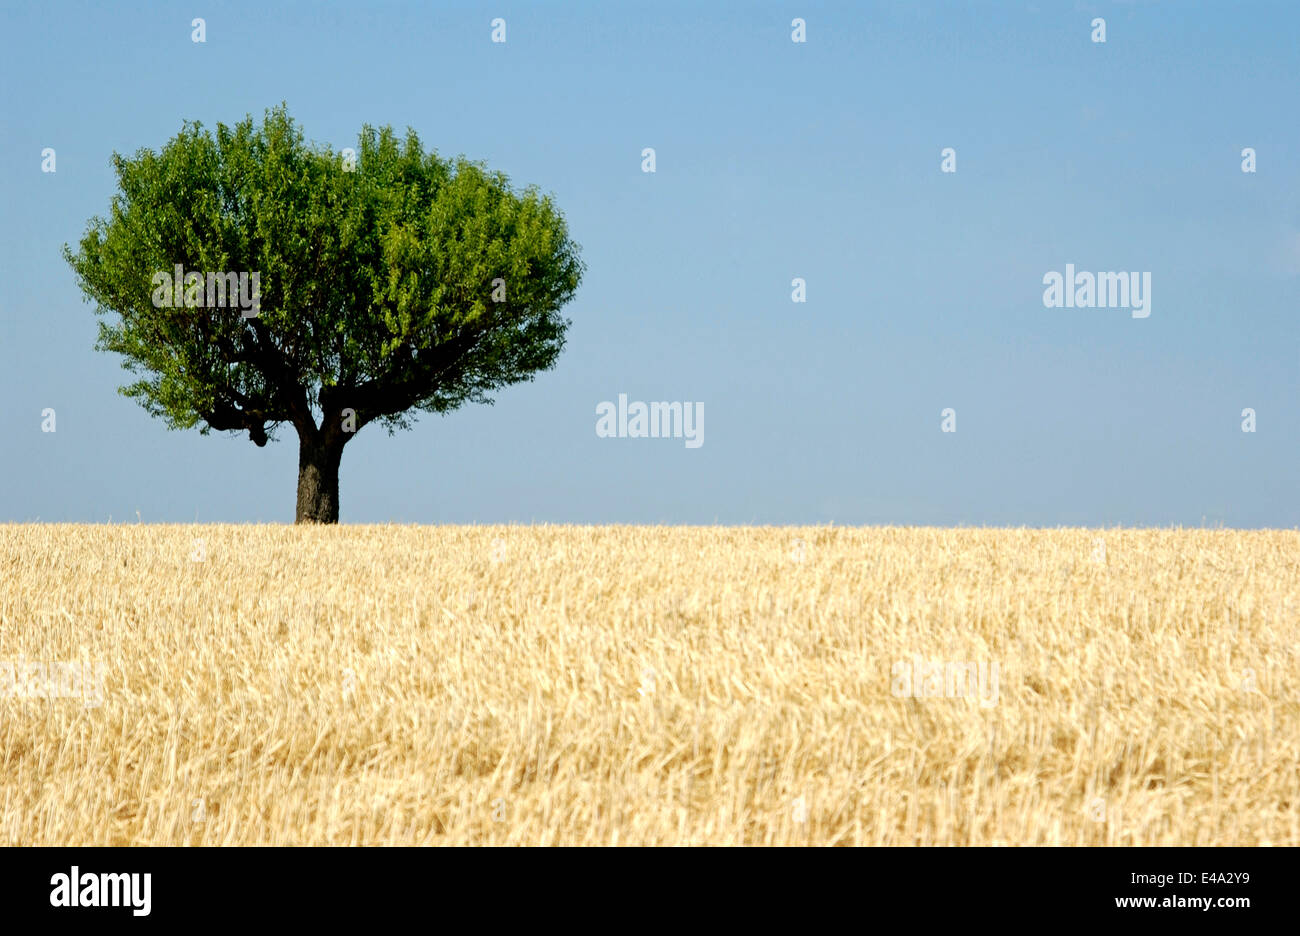 Olivenbaum in einem Weizenfeld in der Provence, Frankreich in der Sommersaison Stockfoto